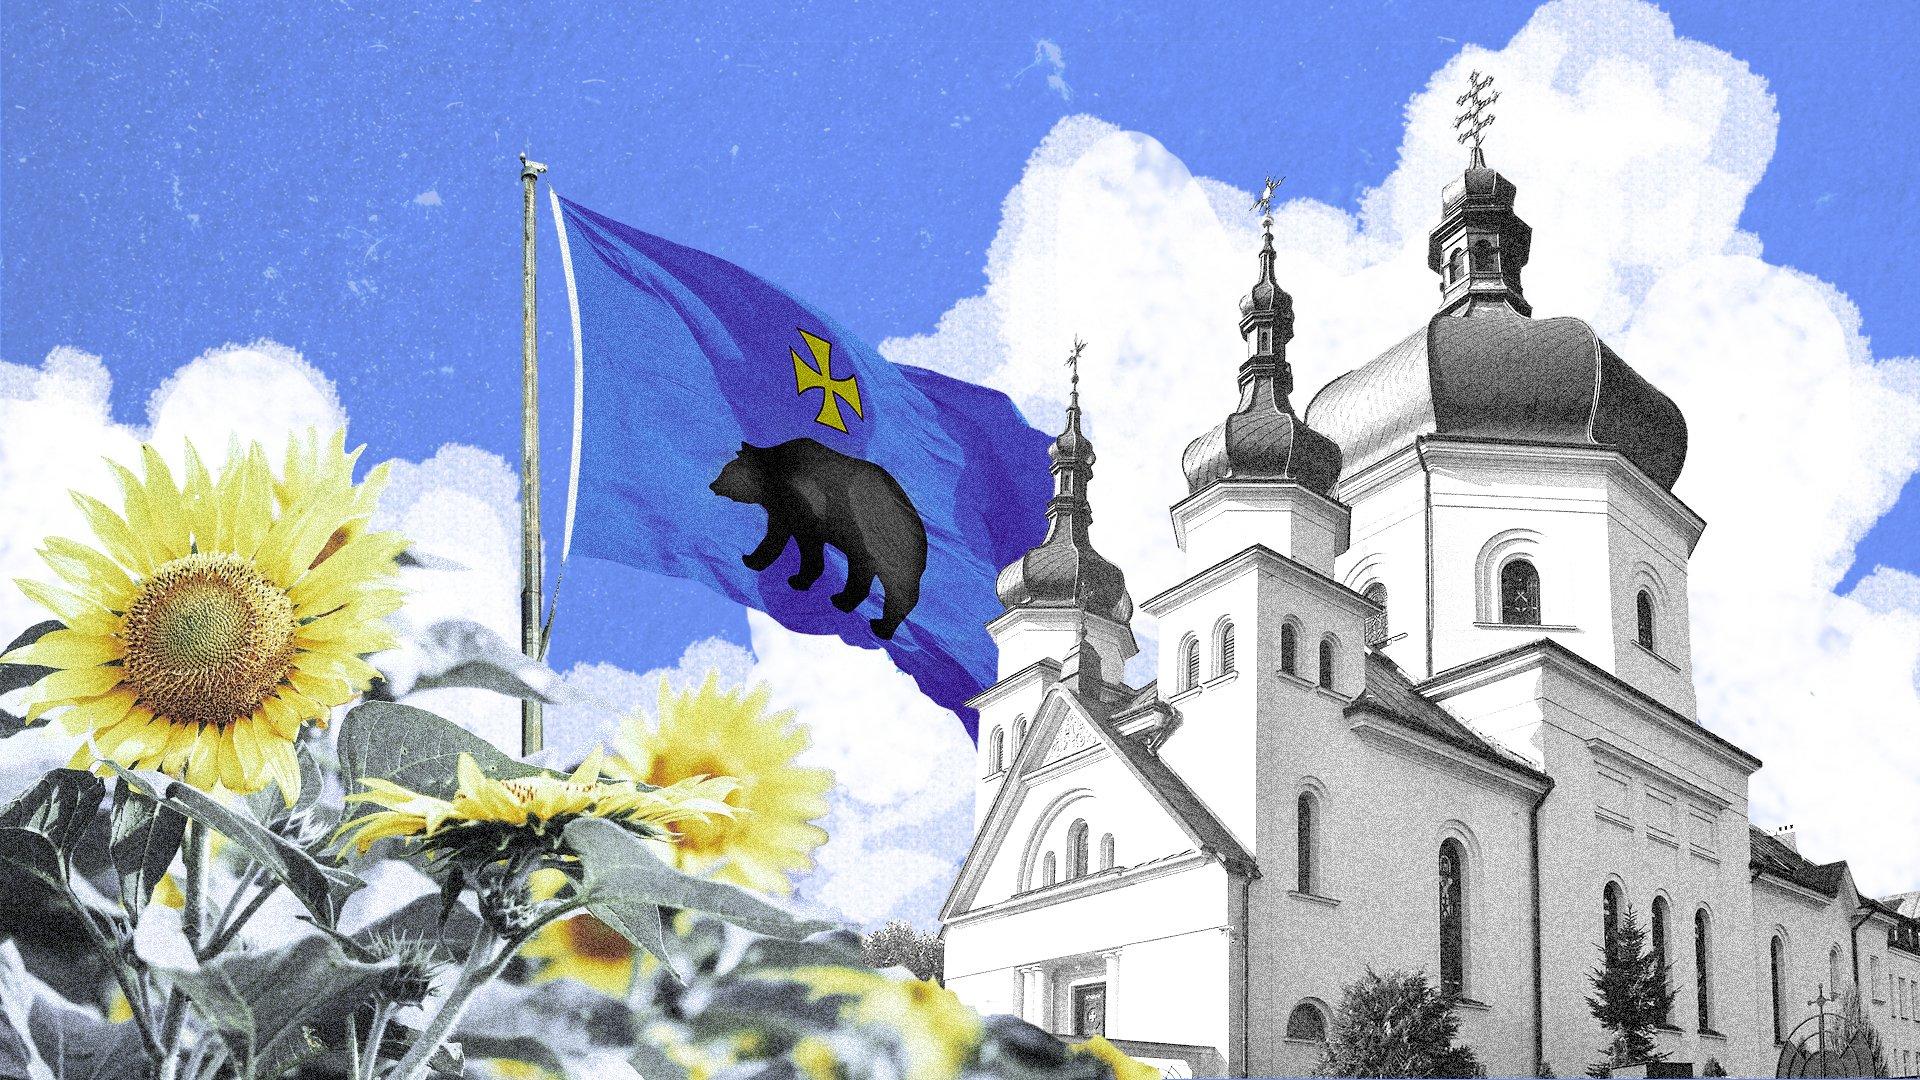 słoneczniki i powiewająca flaga z herbem Przemyśla, przedstawiającym niedźwiedzia i żółty krzyż na niebieskim tle, w tle cerkiew